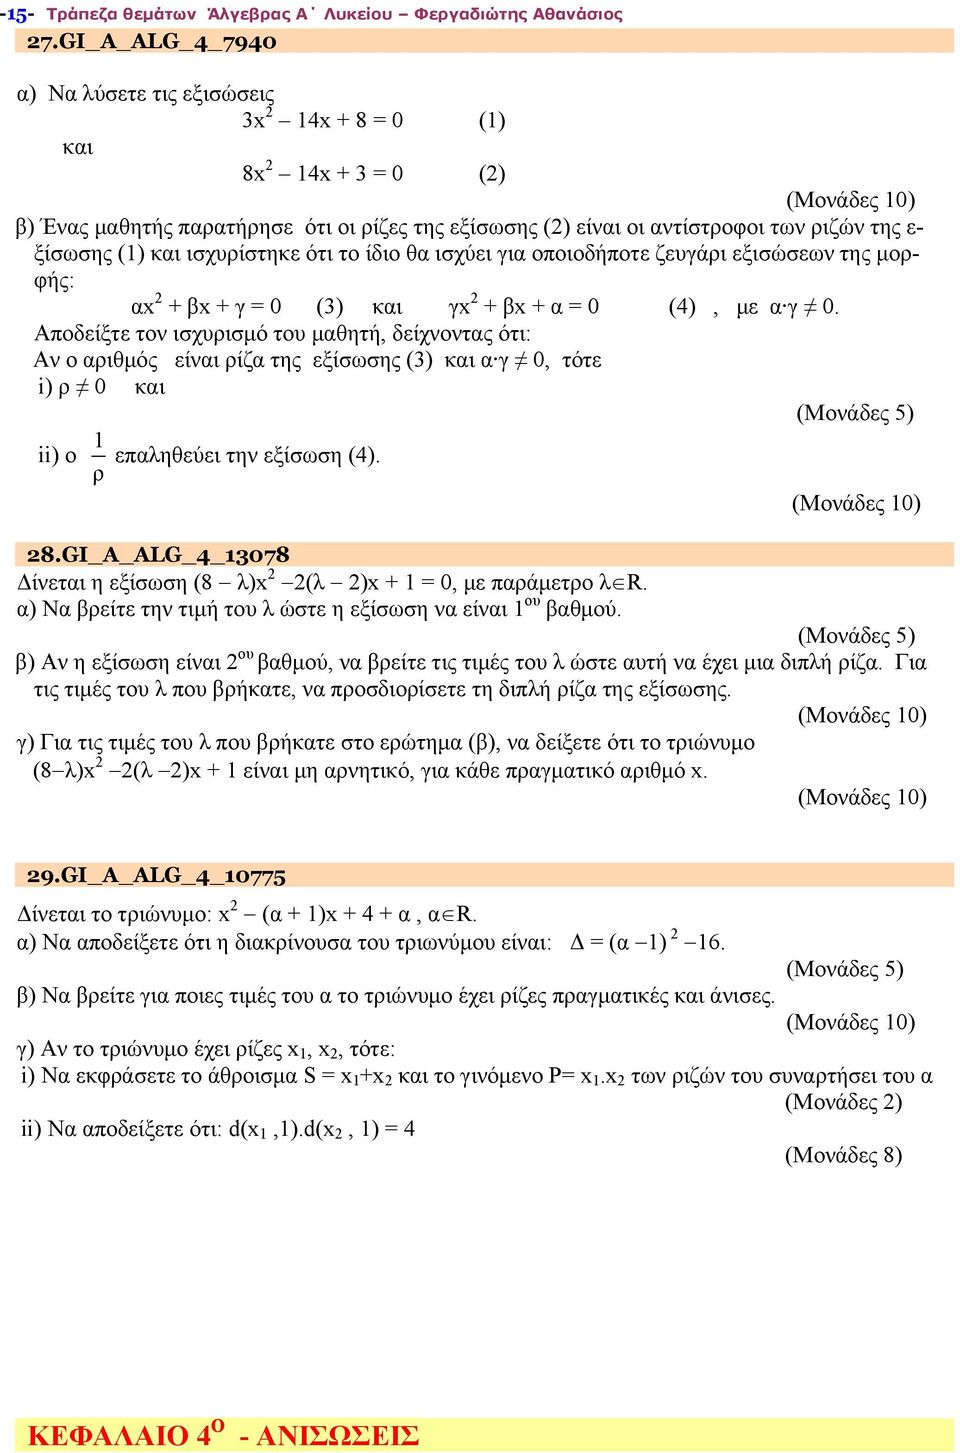 ισχυρίστηκε ότι το ίδιο θα ισχύει για οποιοδήποτε ζευγάρι εξισώσεων της μορφής: αx + βx + γ = 0 (3) και γx + βx + α = 0 (4), με α γ 0.